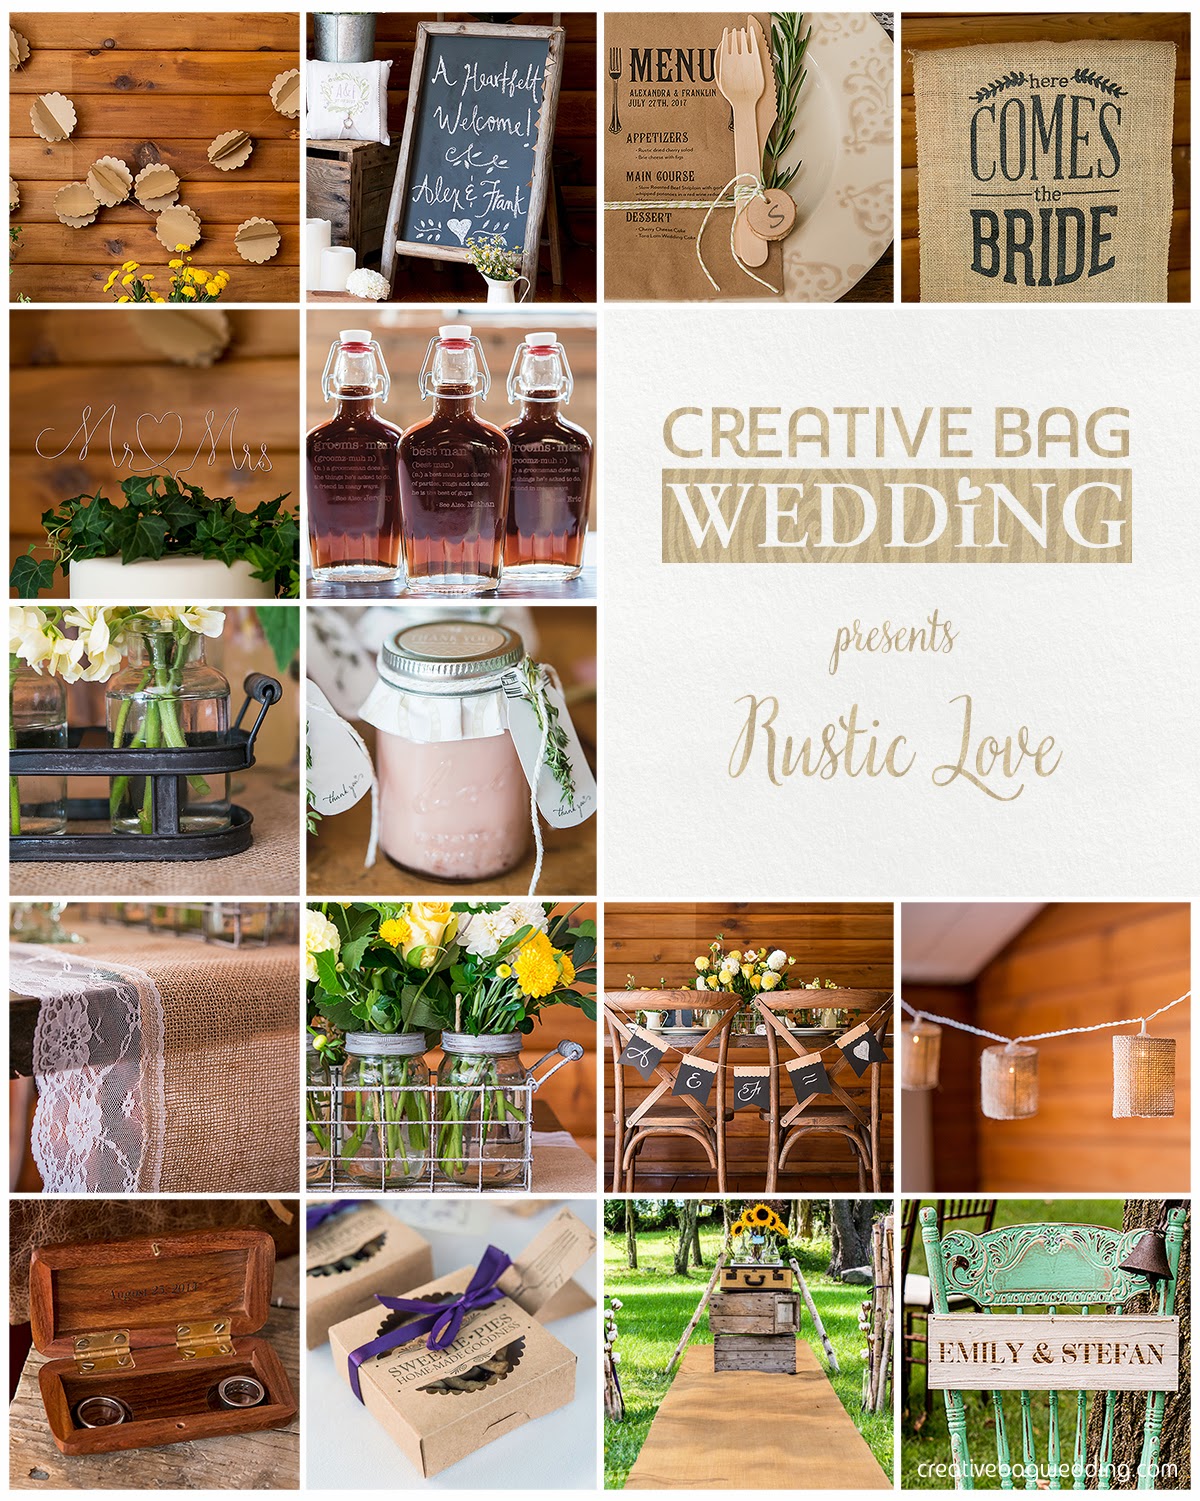 Rustic Love mood board | Creative Bag Wedding